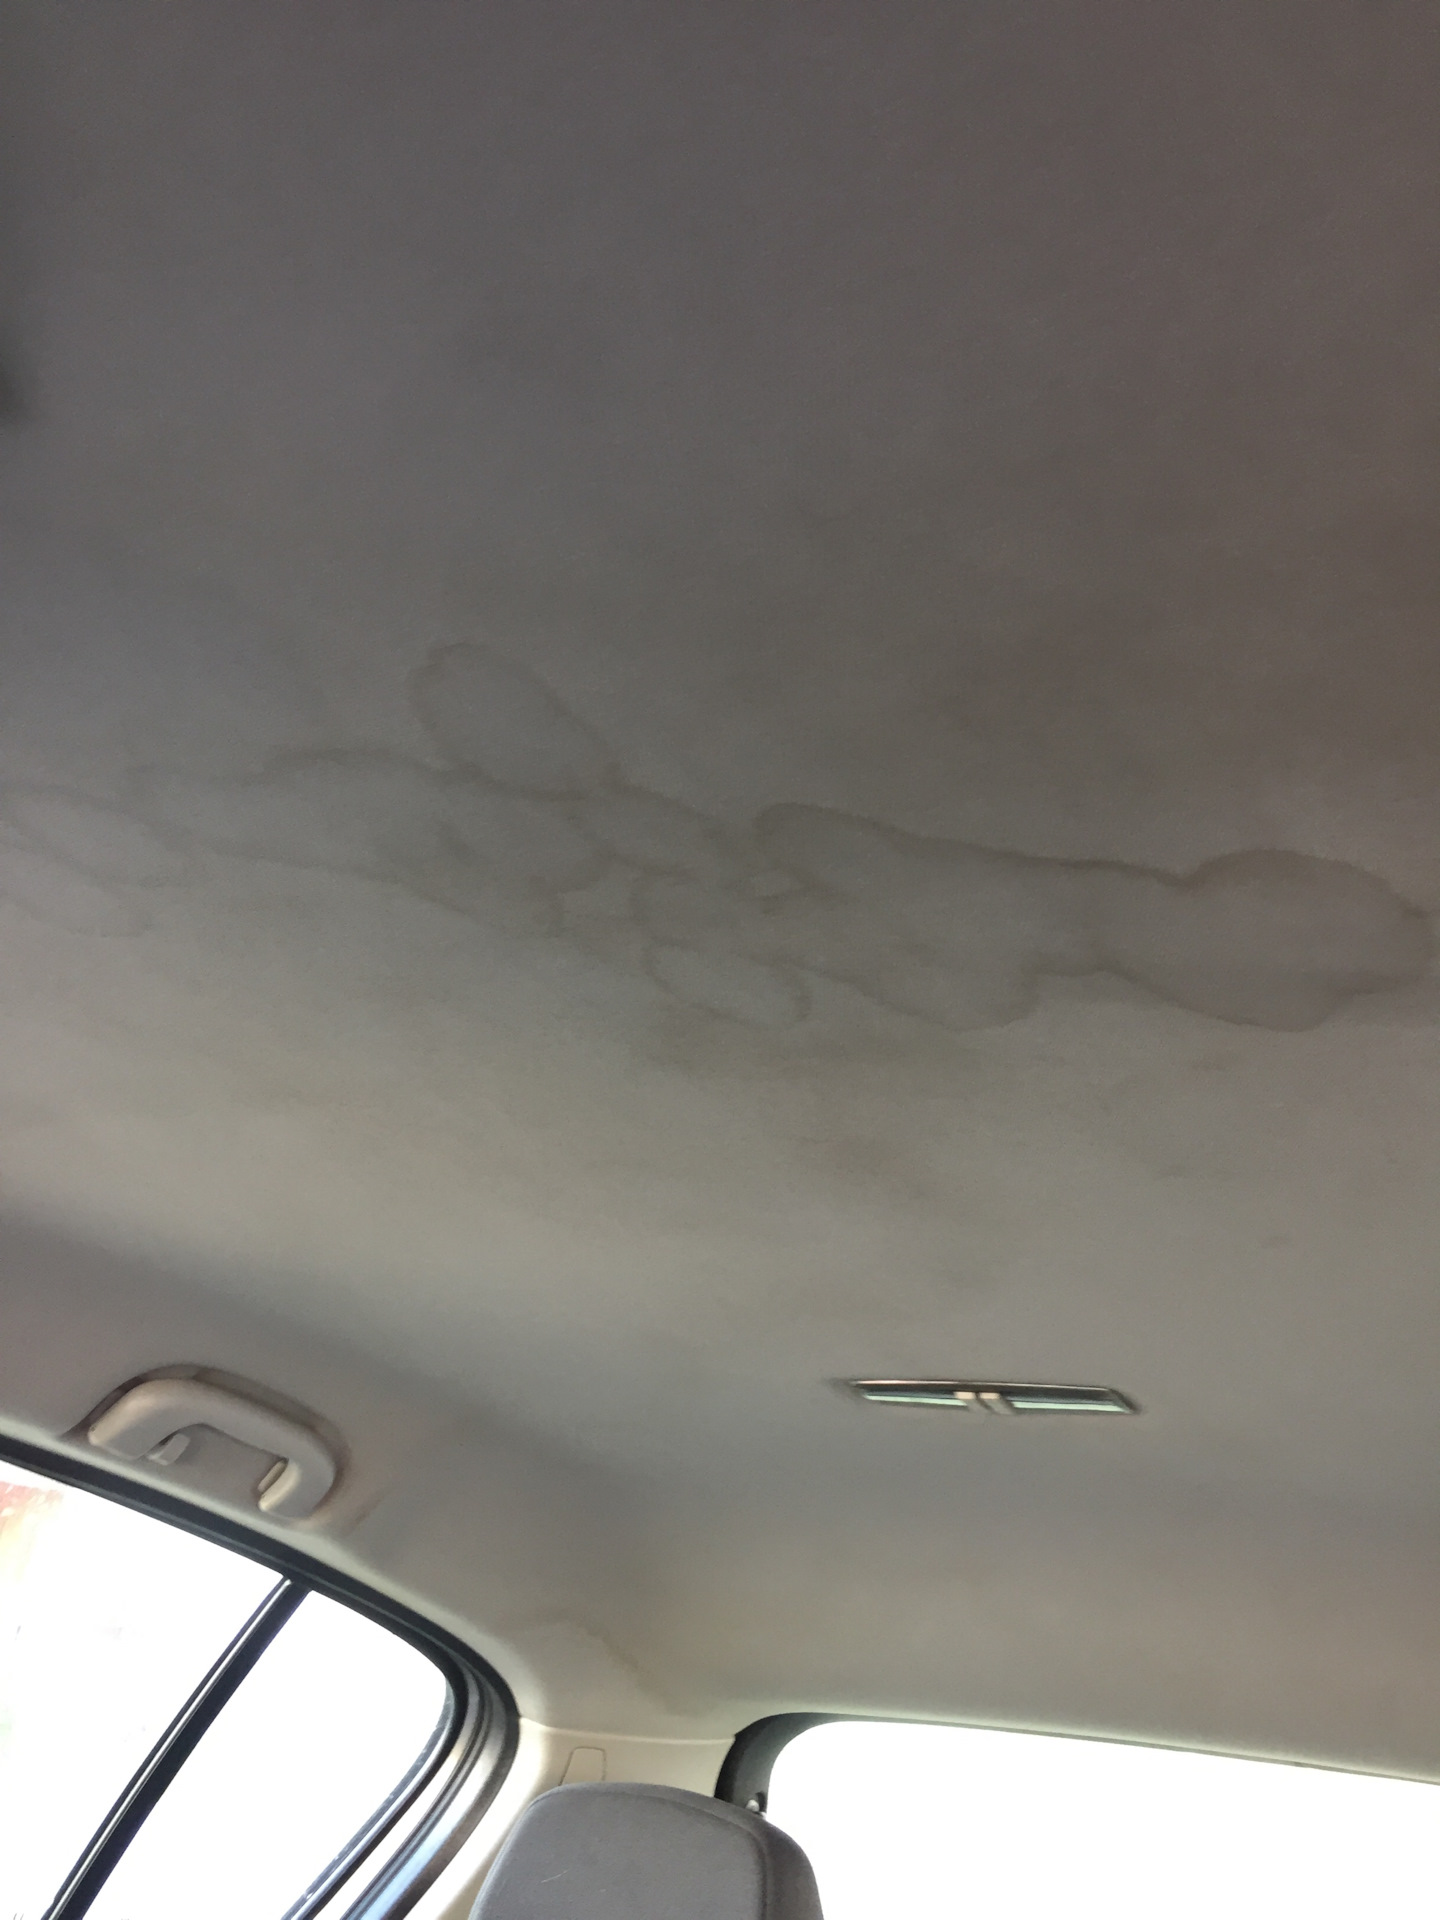 Как отмыть потолок от копоти. Химчистка потолка автомобиля. Воздуховод в потолке автомобиля. Вмятины на обшивке потолка автомобиля. Химчистка потолка в машине.